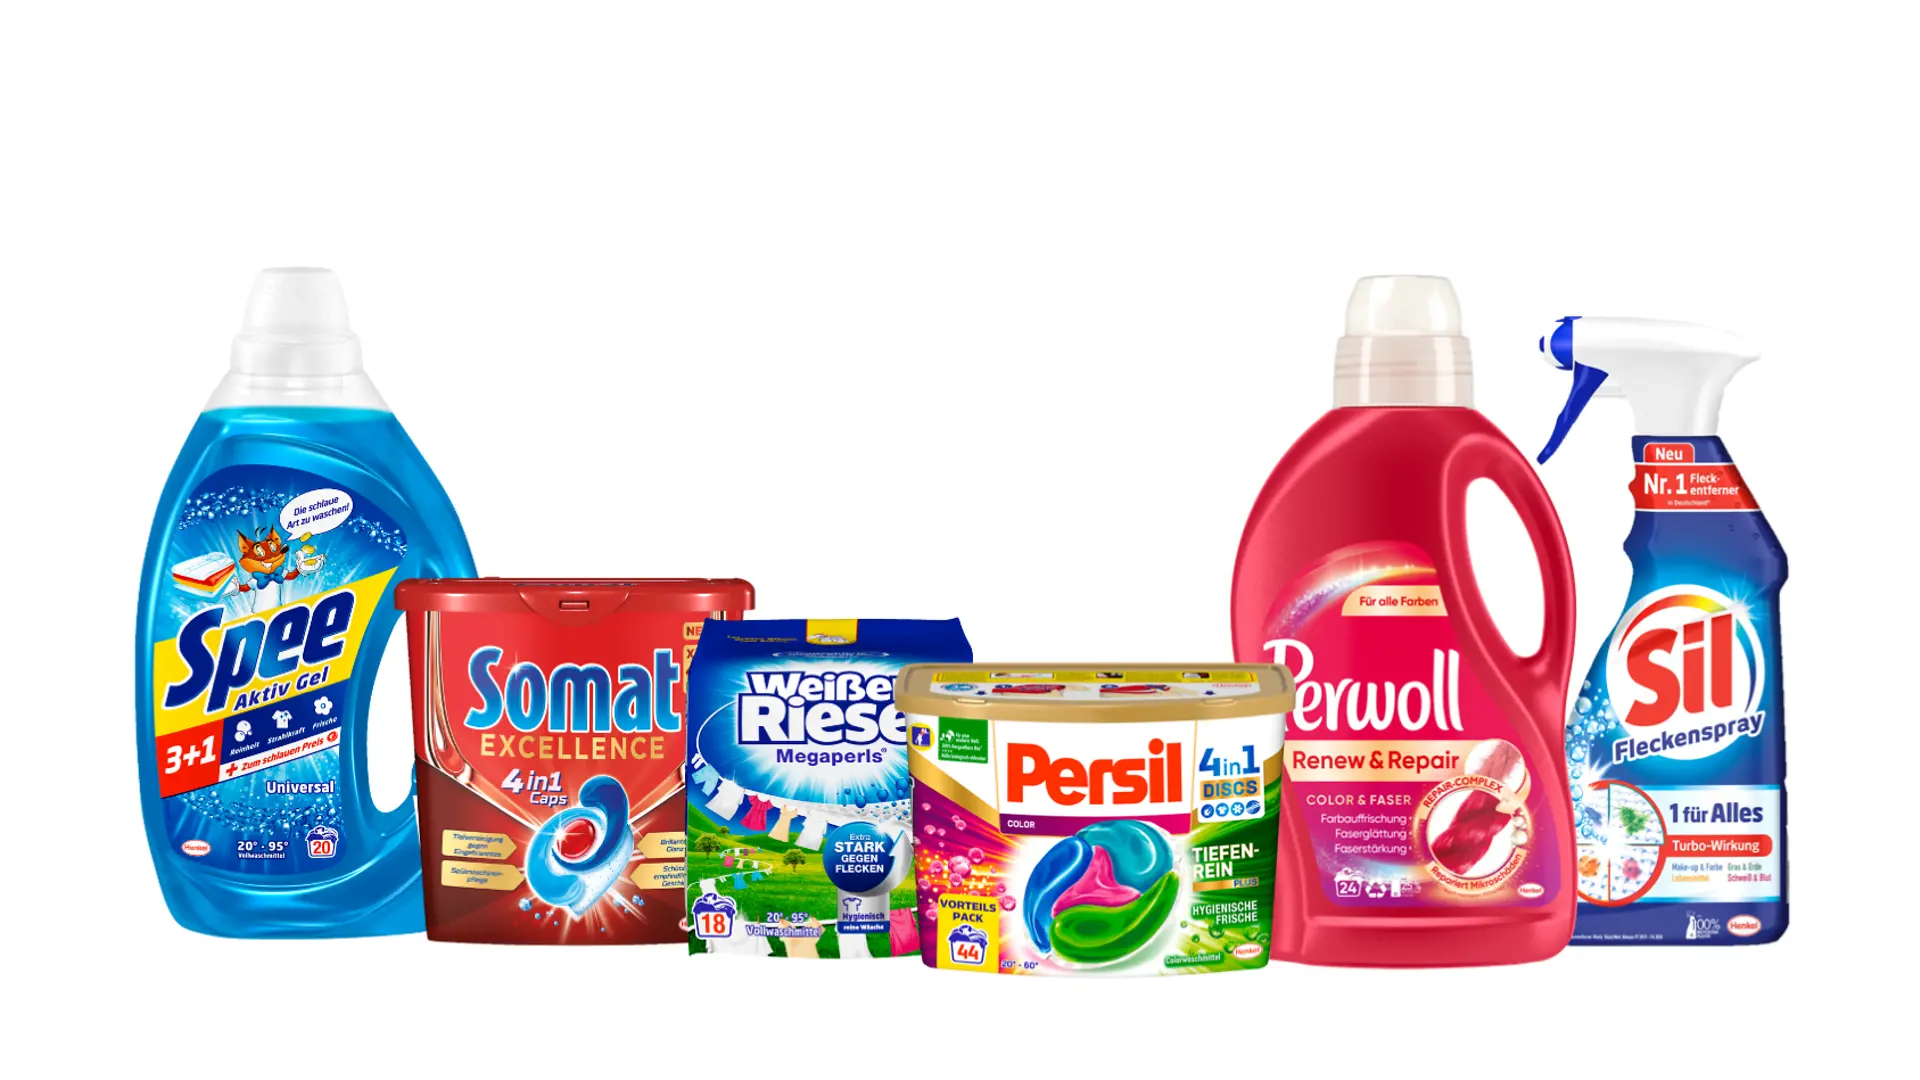 6 Henkel-Produkte aus dem Geschirr-Reiniger- und Waschmittel-Portfolio: Spee, Somat, Weißer Riese, Persil, Perwoll und Sil